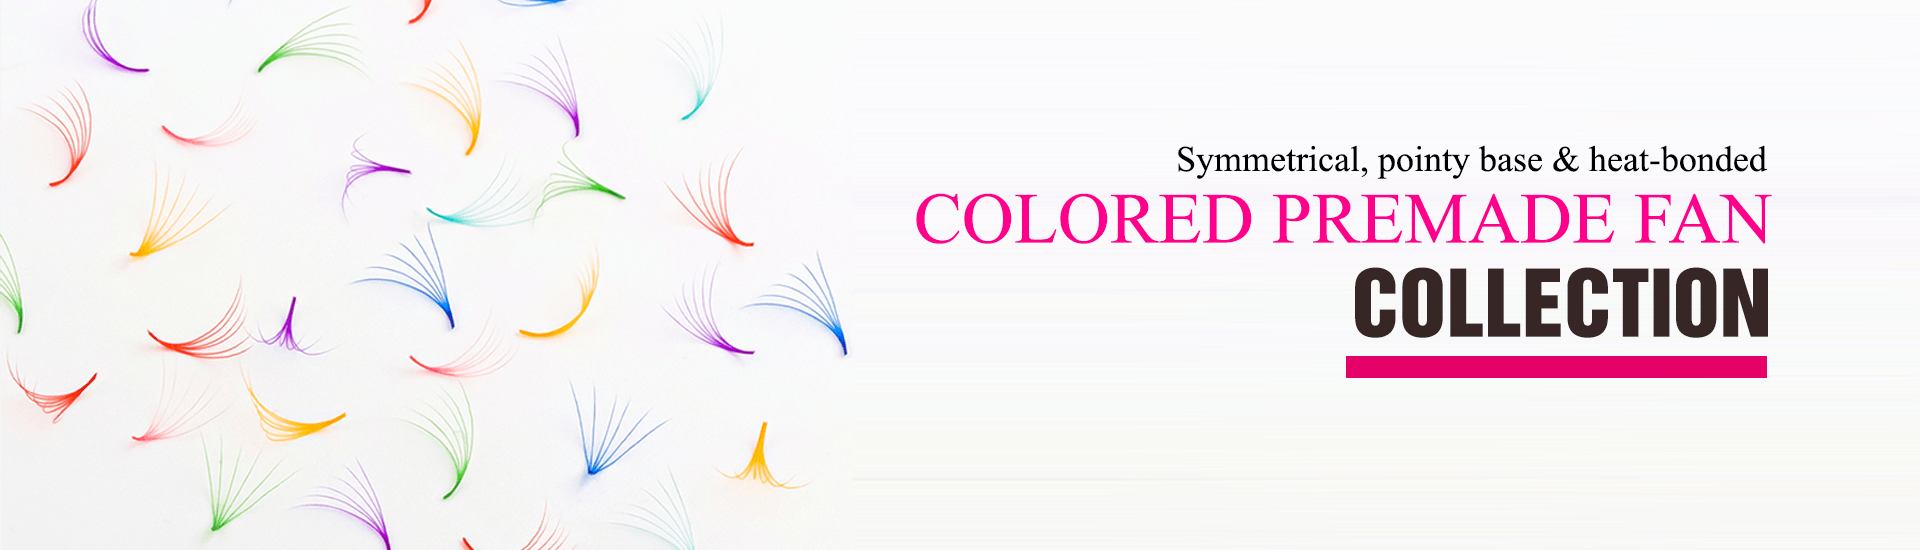 Colored-premade-fan-lashes-1